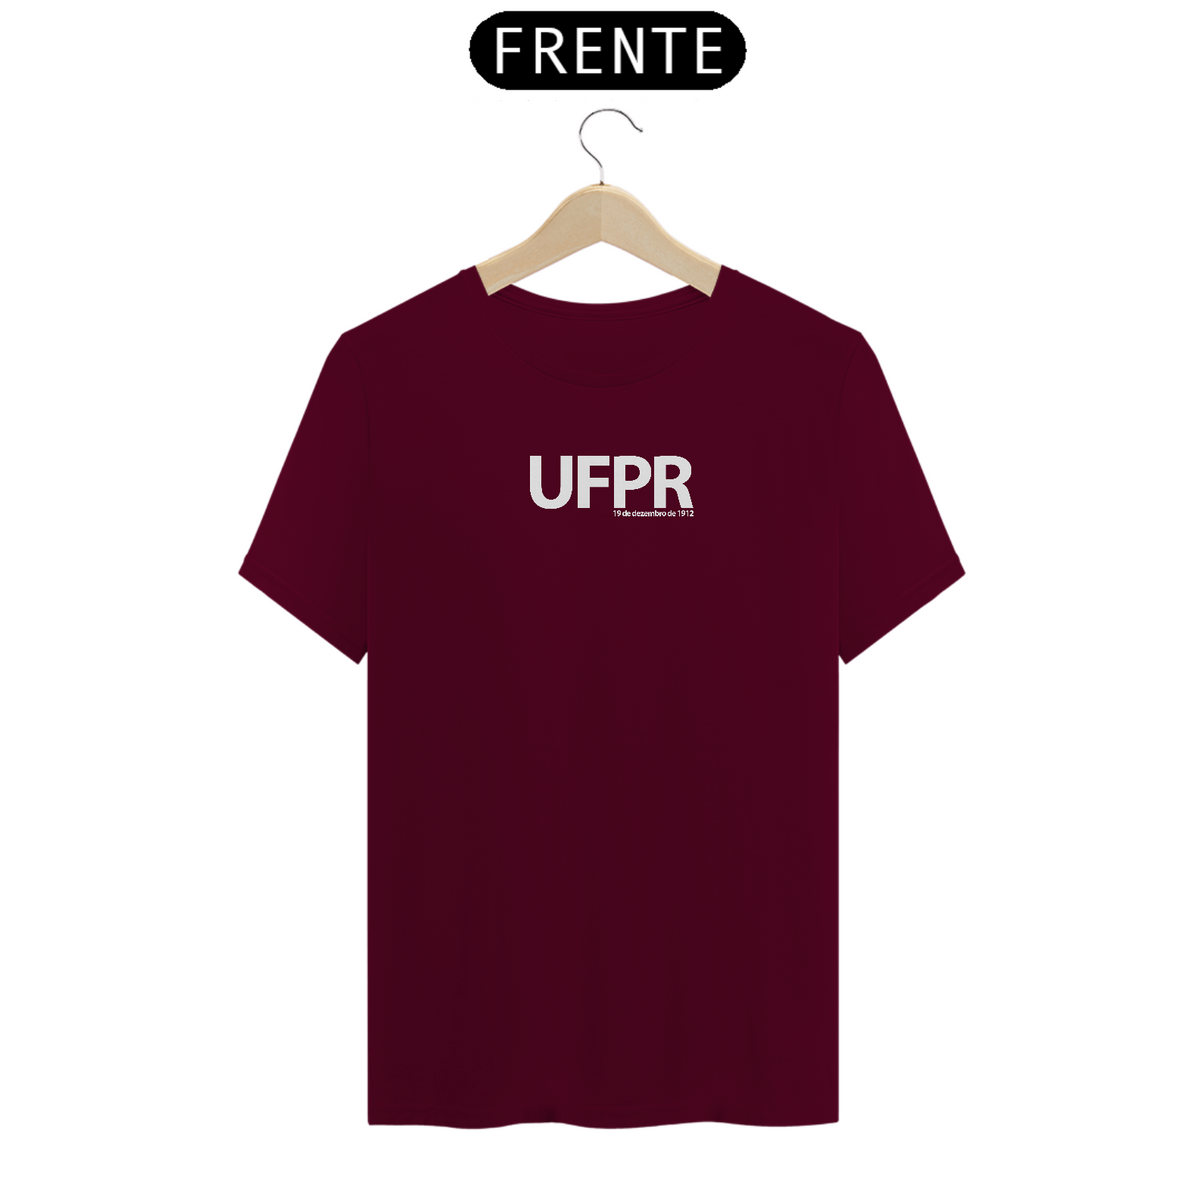 Nome do produto: UFPR - Inauguração